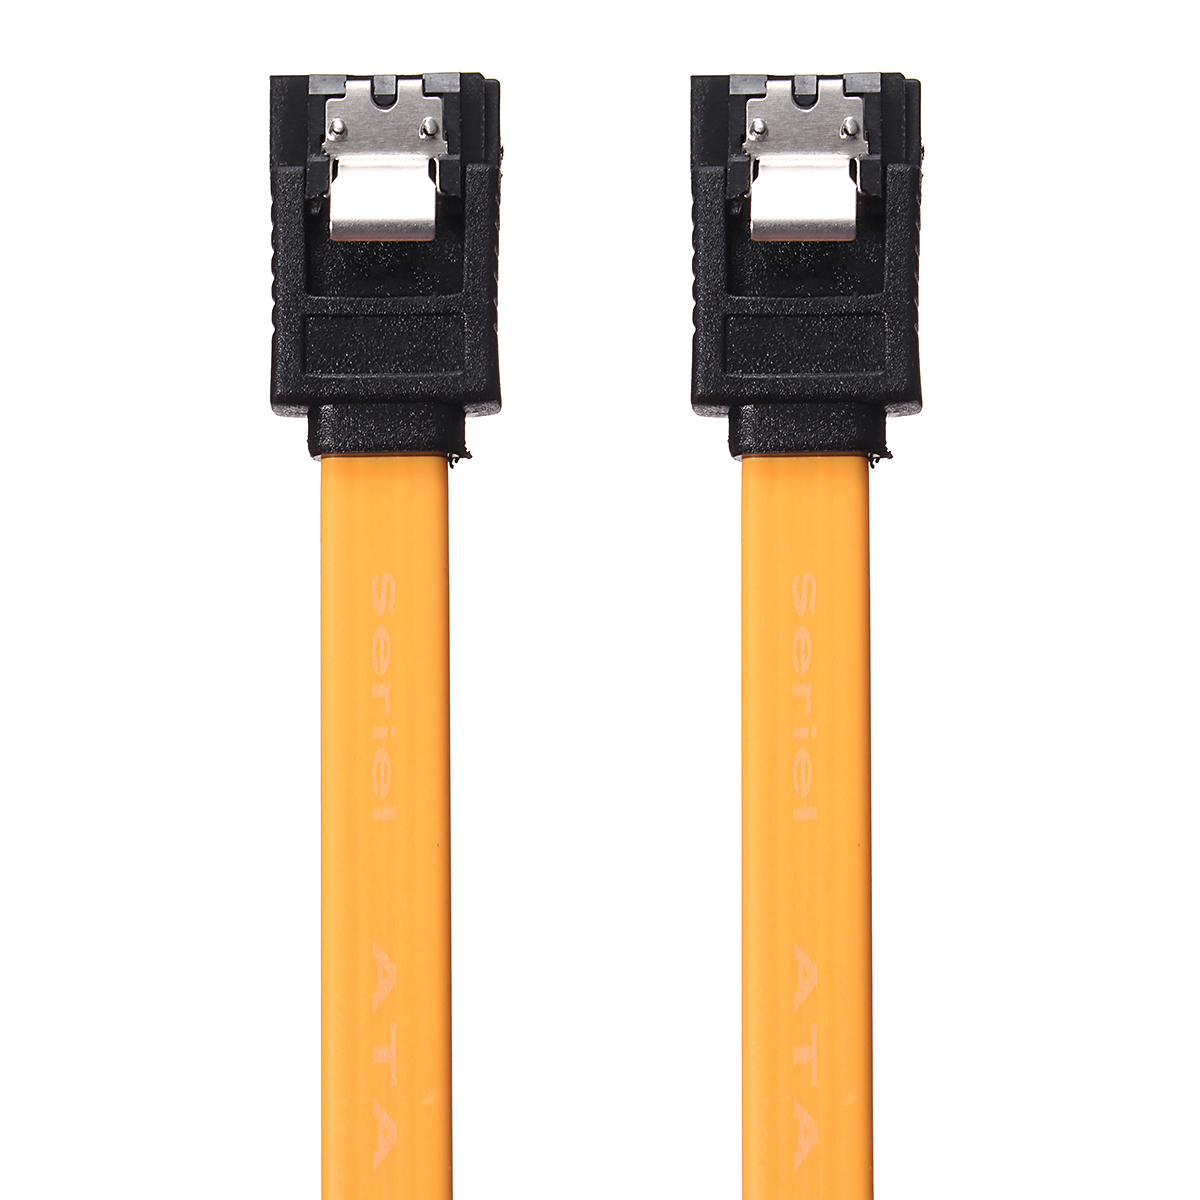 SATA-20-Cable-with-a-Shrapnel-Clip-SATA-Hard-Drive-Data-Line-1167267